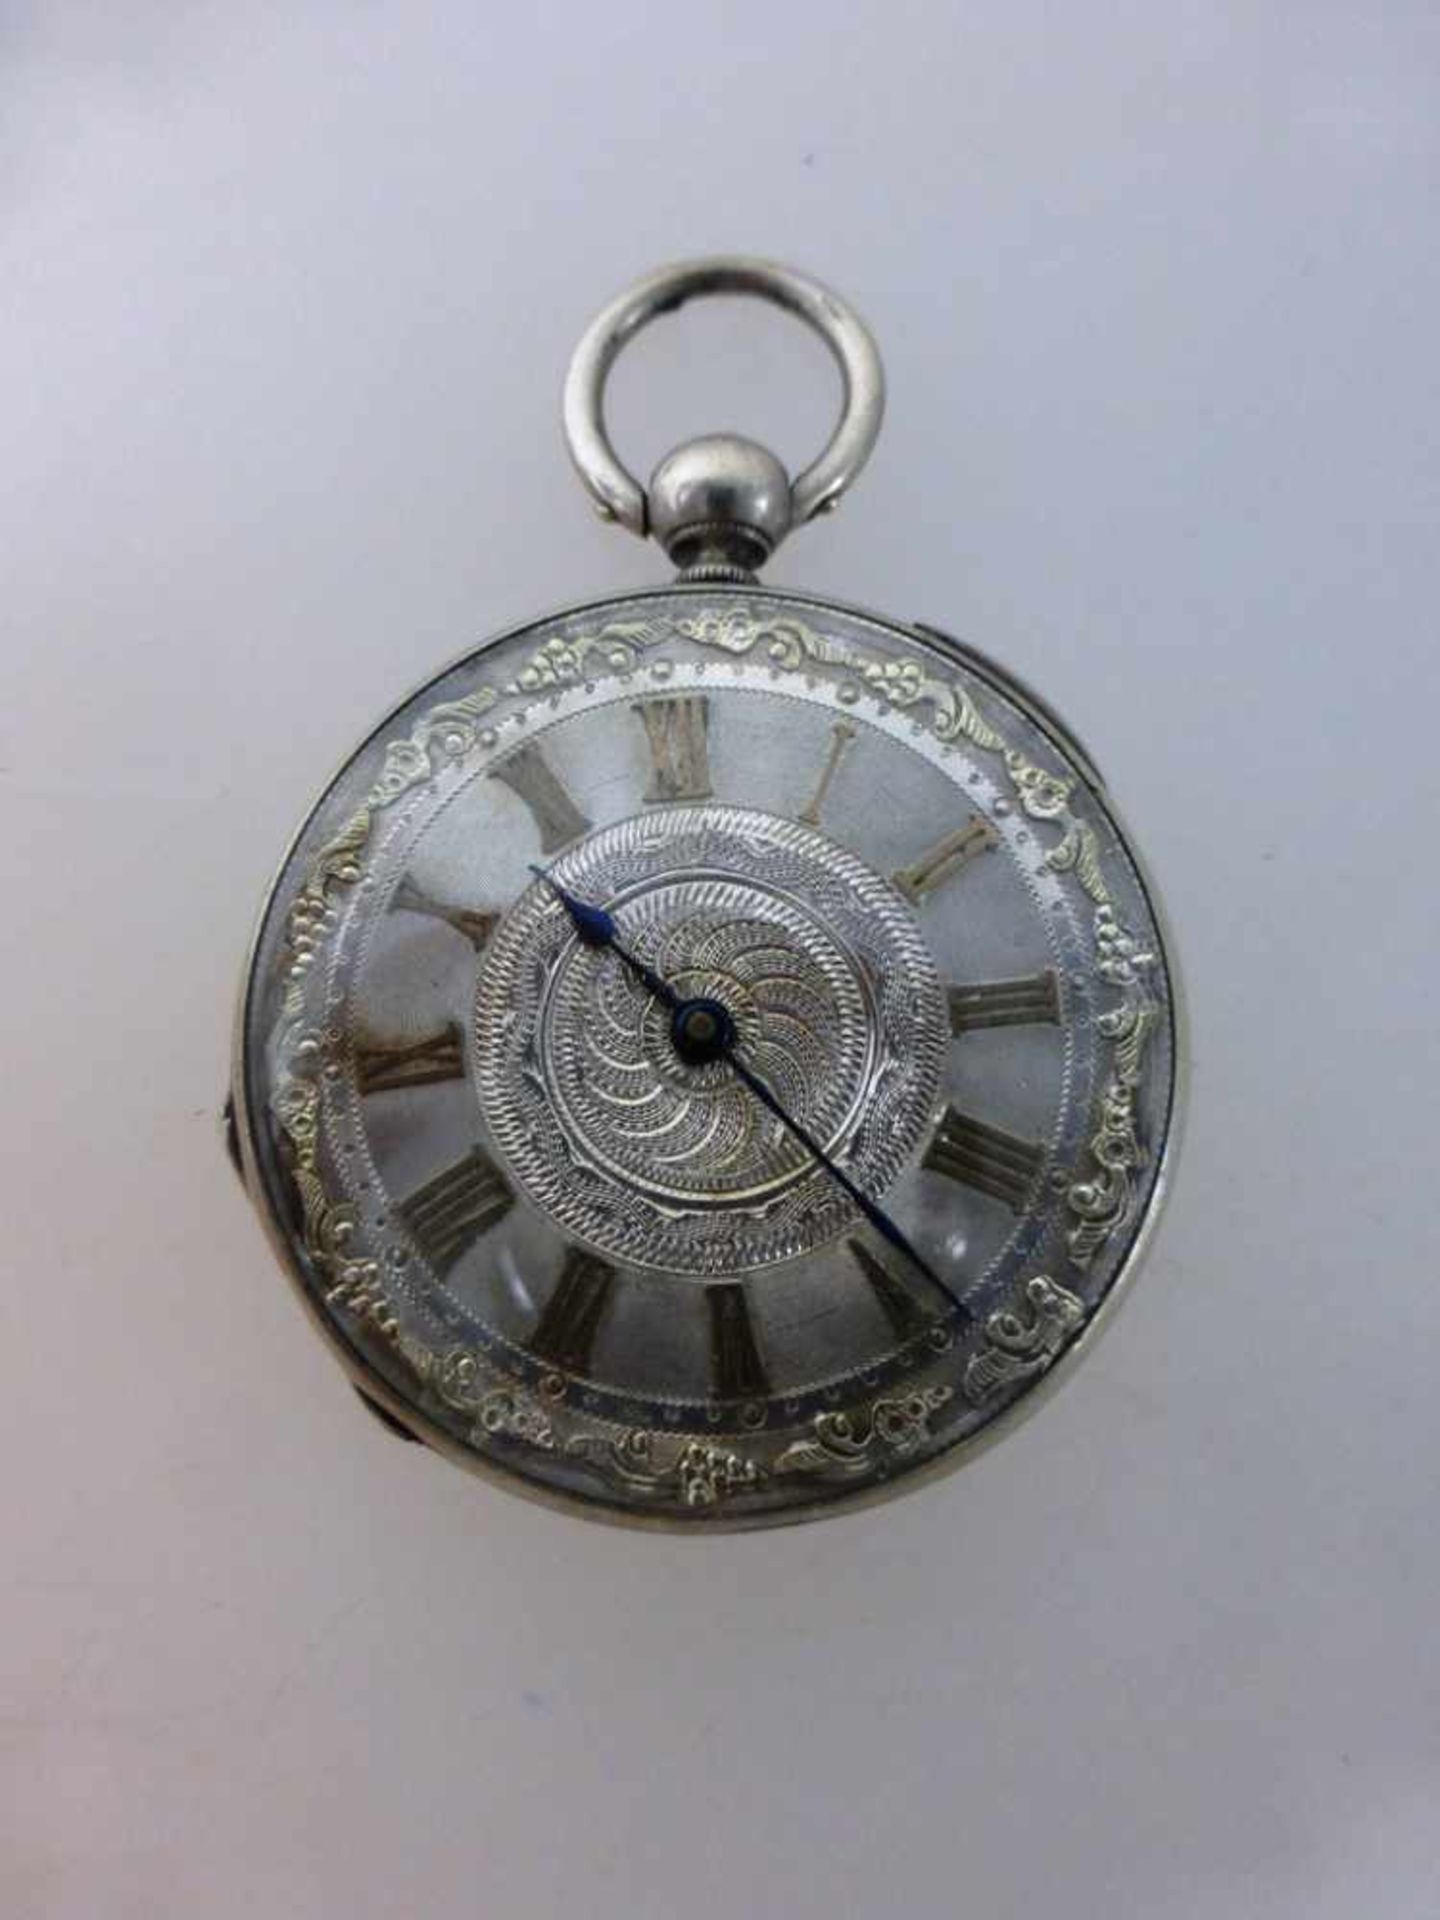 Englische Schlüsseltaschenuhr um 1890, Silber, d. 37,4mm, läuft an, Funktion n. gepr.- - -18.00 %